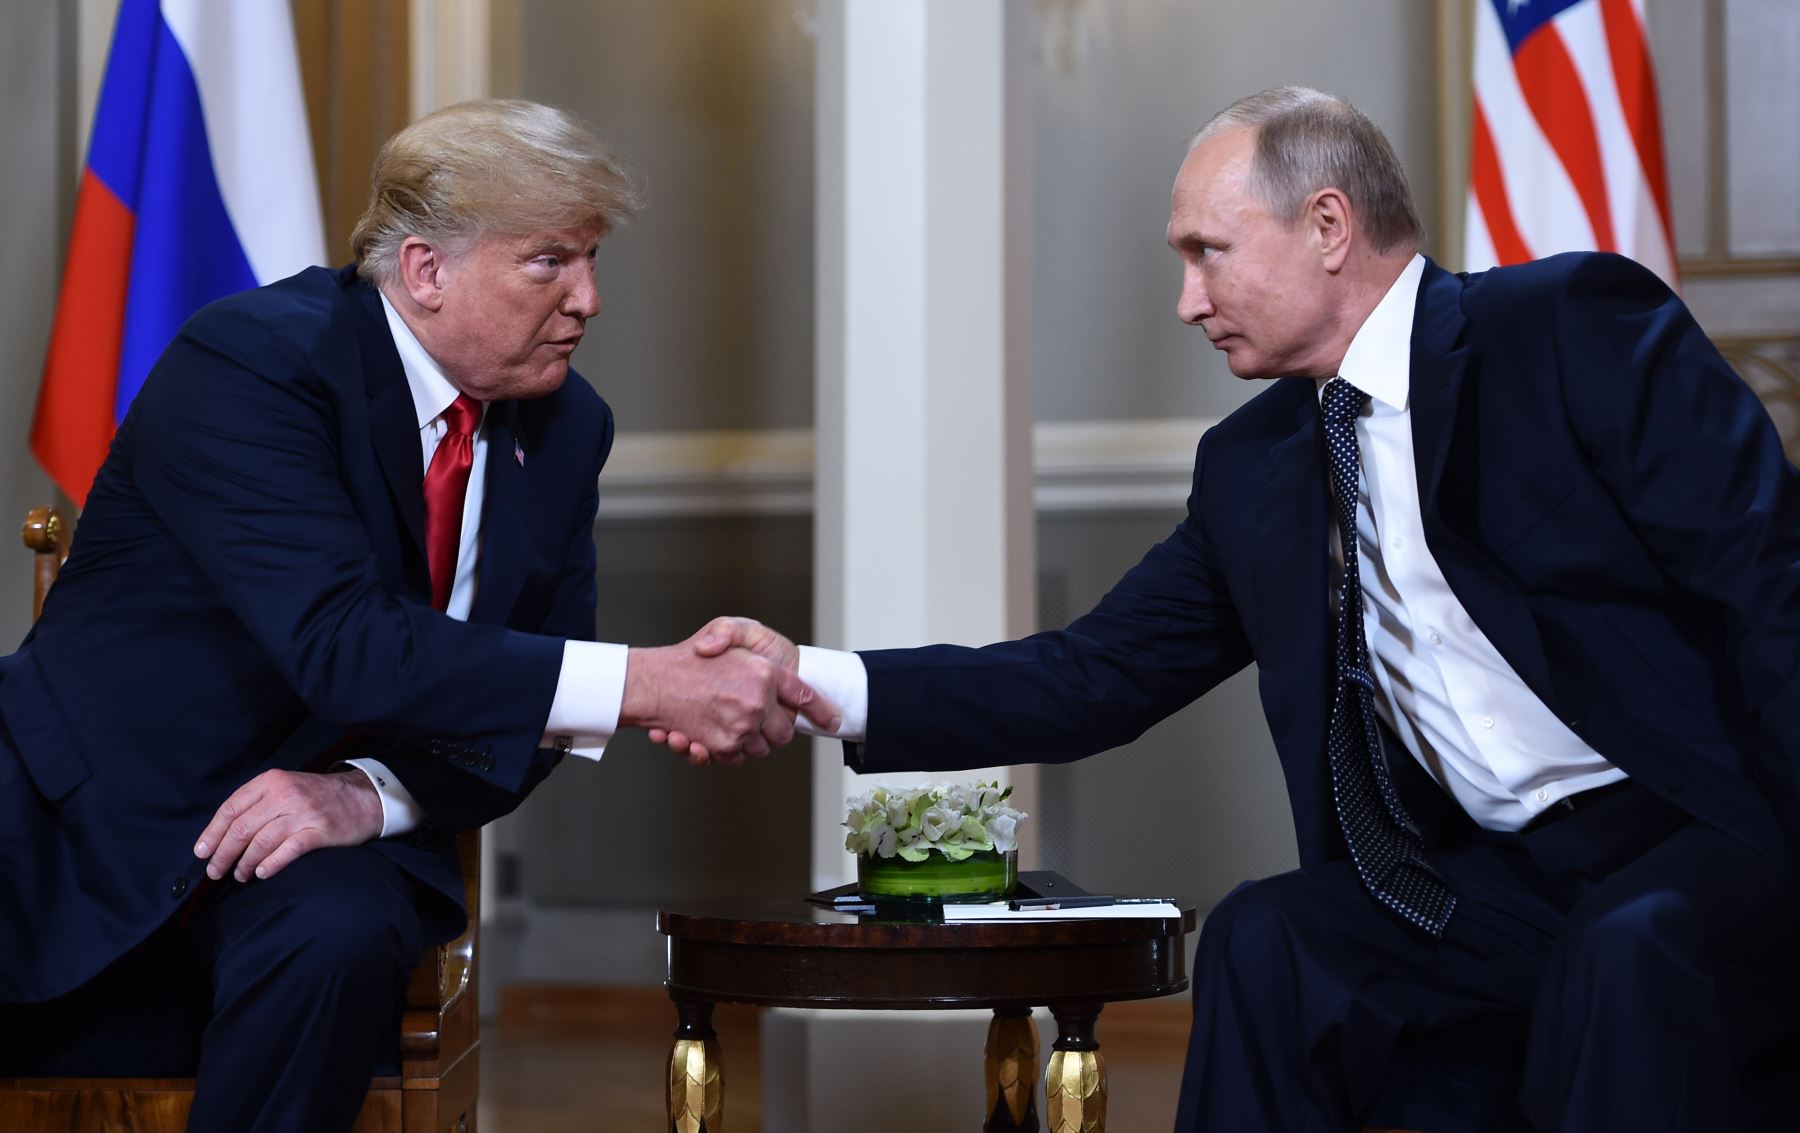 El presidente ruso, Vladimir Putin, y el presidente estadounidense Donald Trump se dan la mano antes de una reunión en Helsinki. AFP